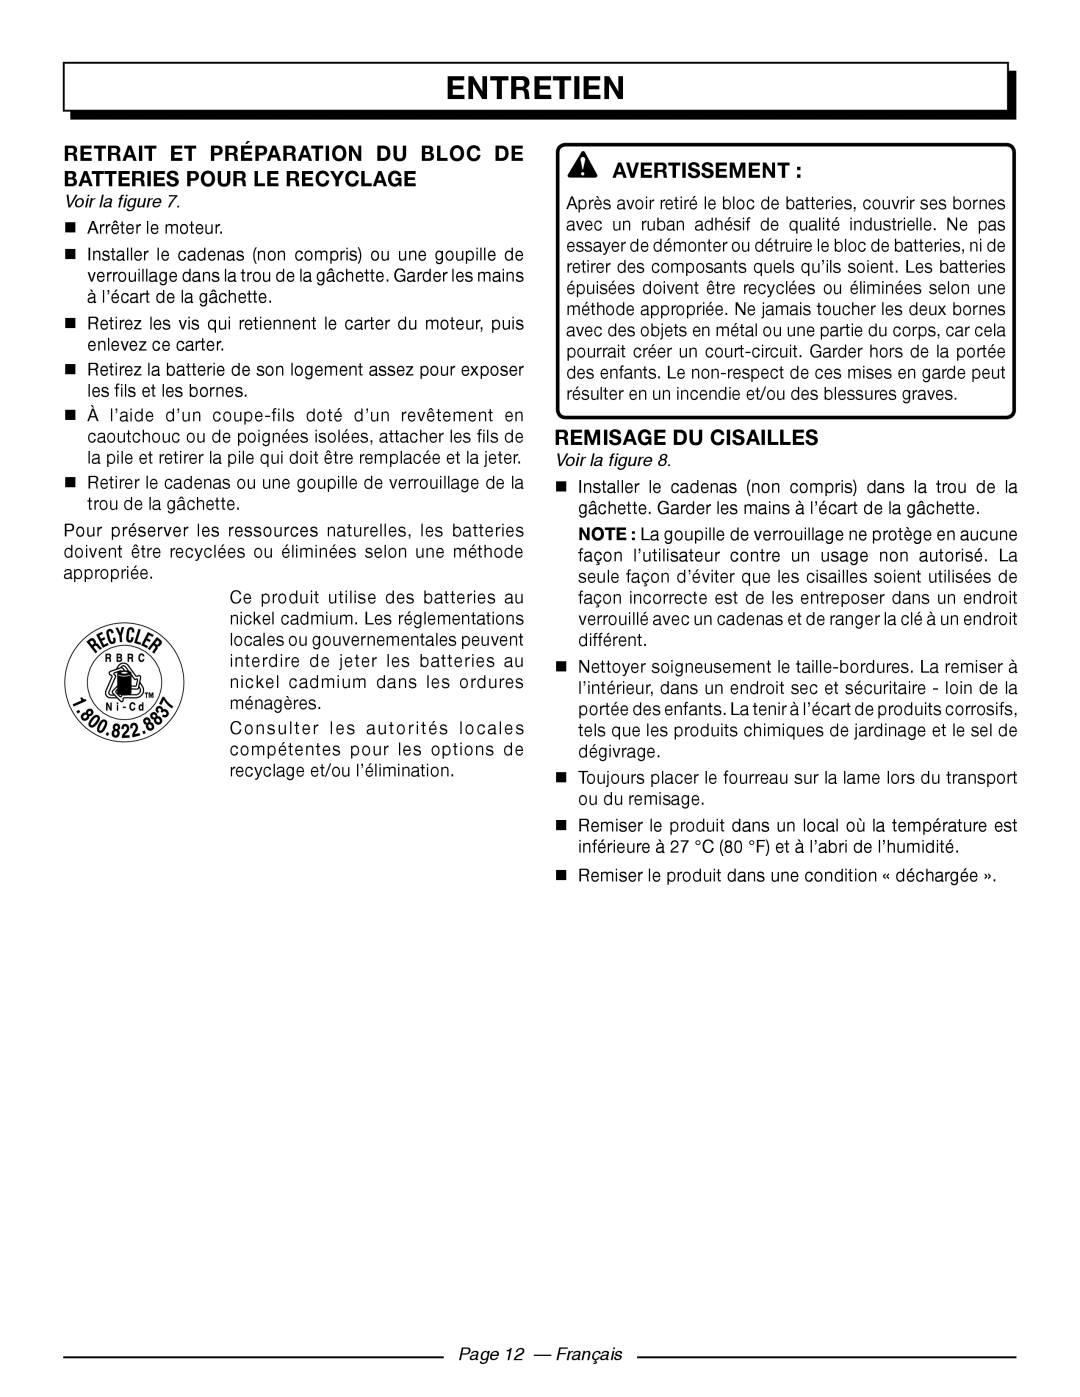 Homelite UT44171 Retrait Et Préparation Du Bloc De Batteries Pour Le Recyclage, REMISAGE DU cisailles, Page 12 - Français 